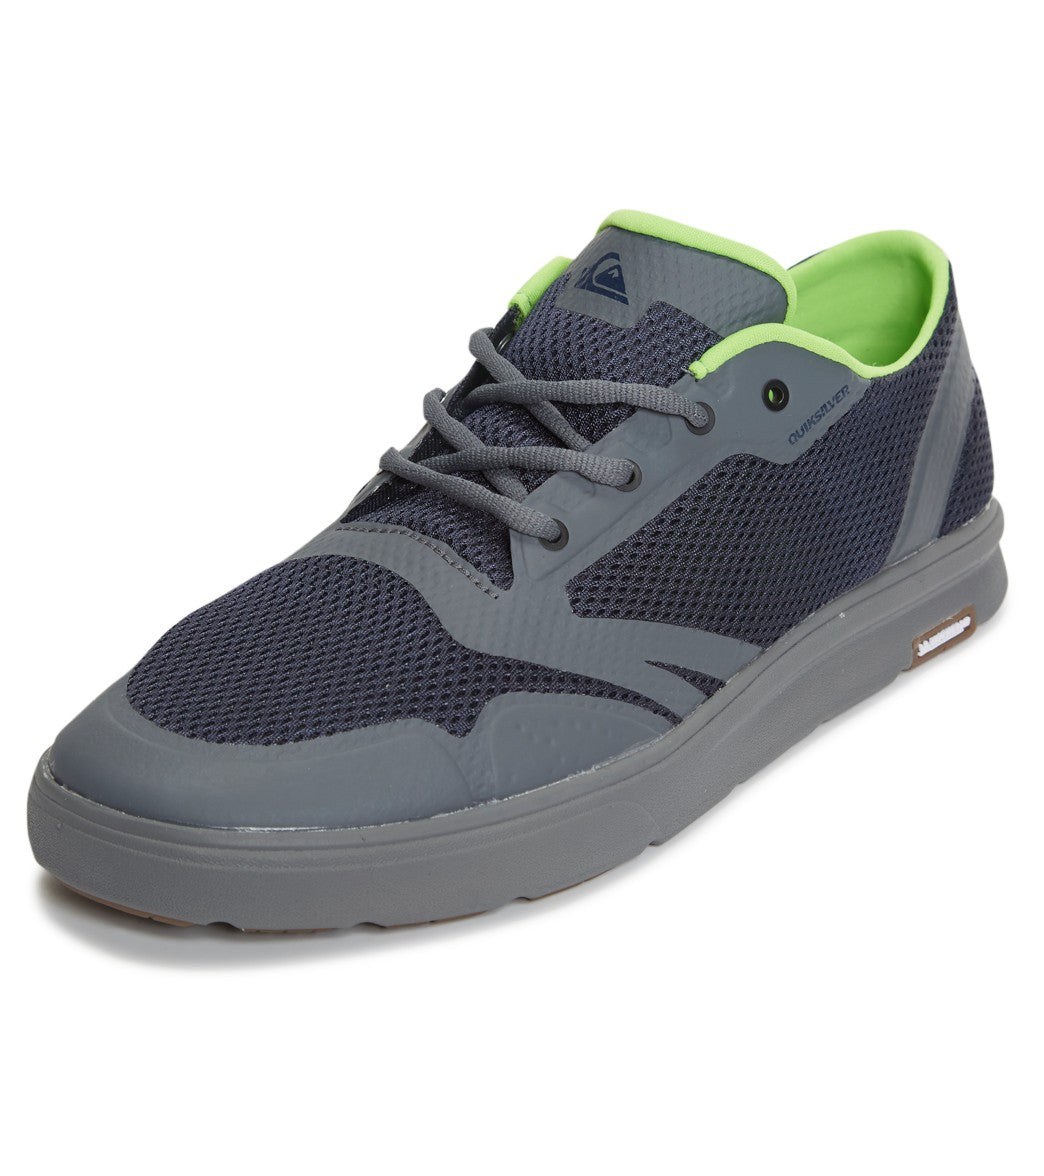 Quiksilver Amphibian Plus Shoes - Blue/Grey 8 - Swimoutlet.com